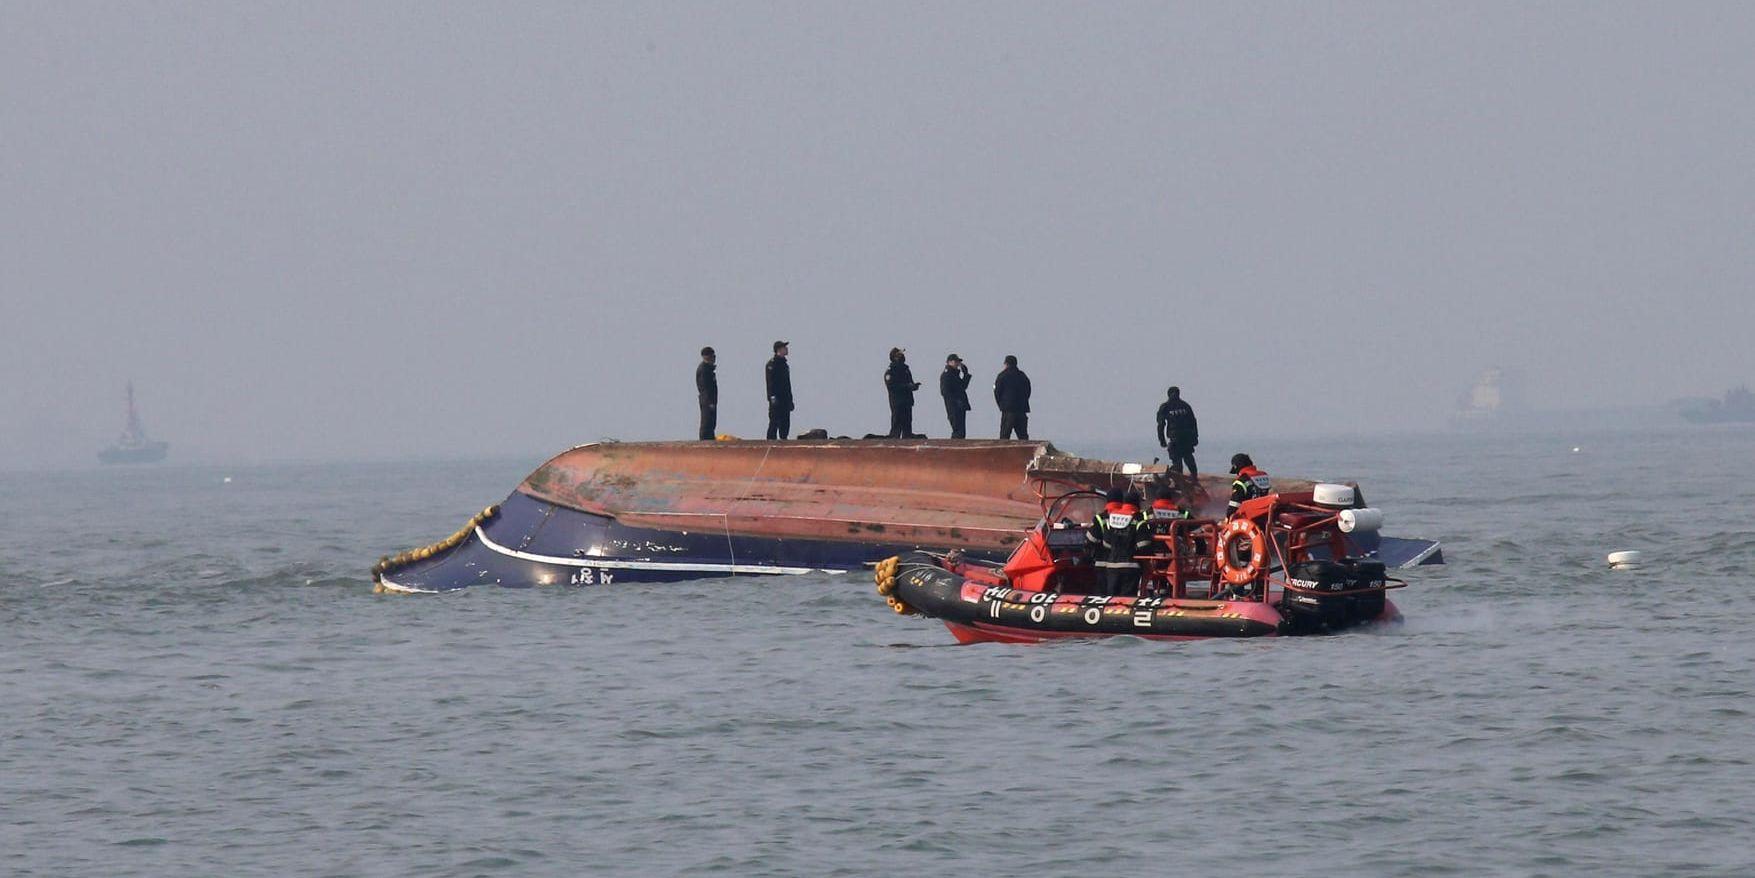 Sydkoreanska kustbevakningen deltar i räddningsarbetet efter båtolyckan.